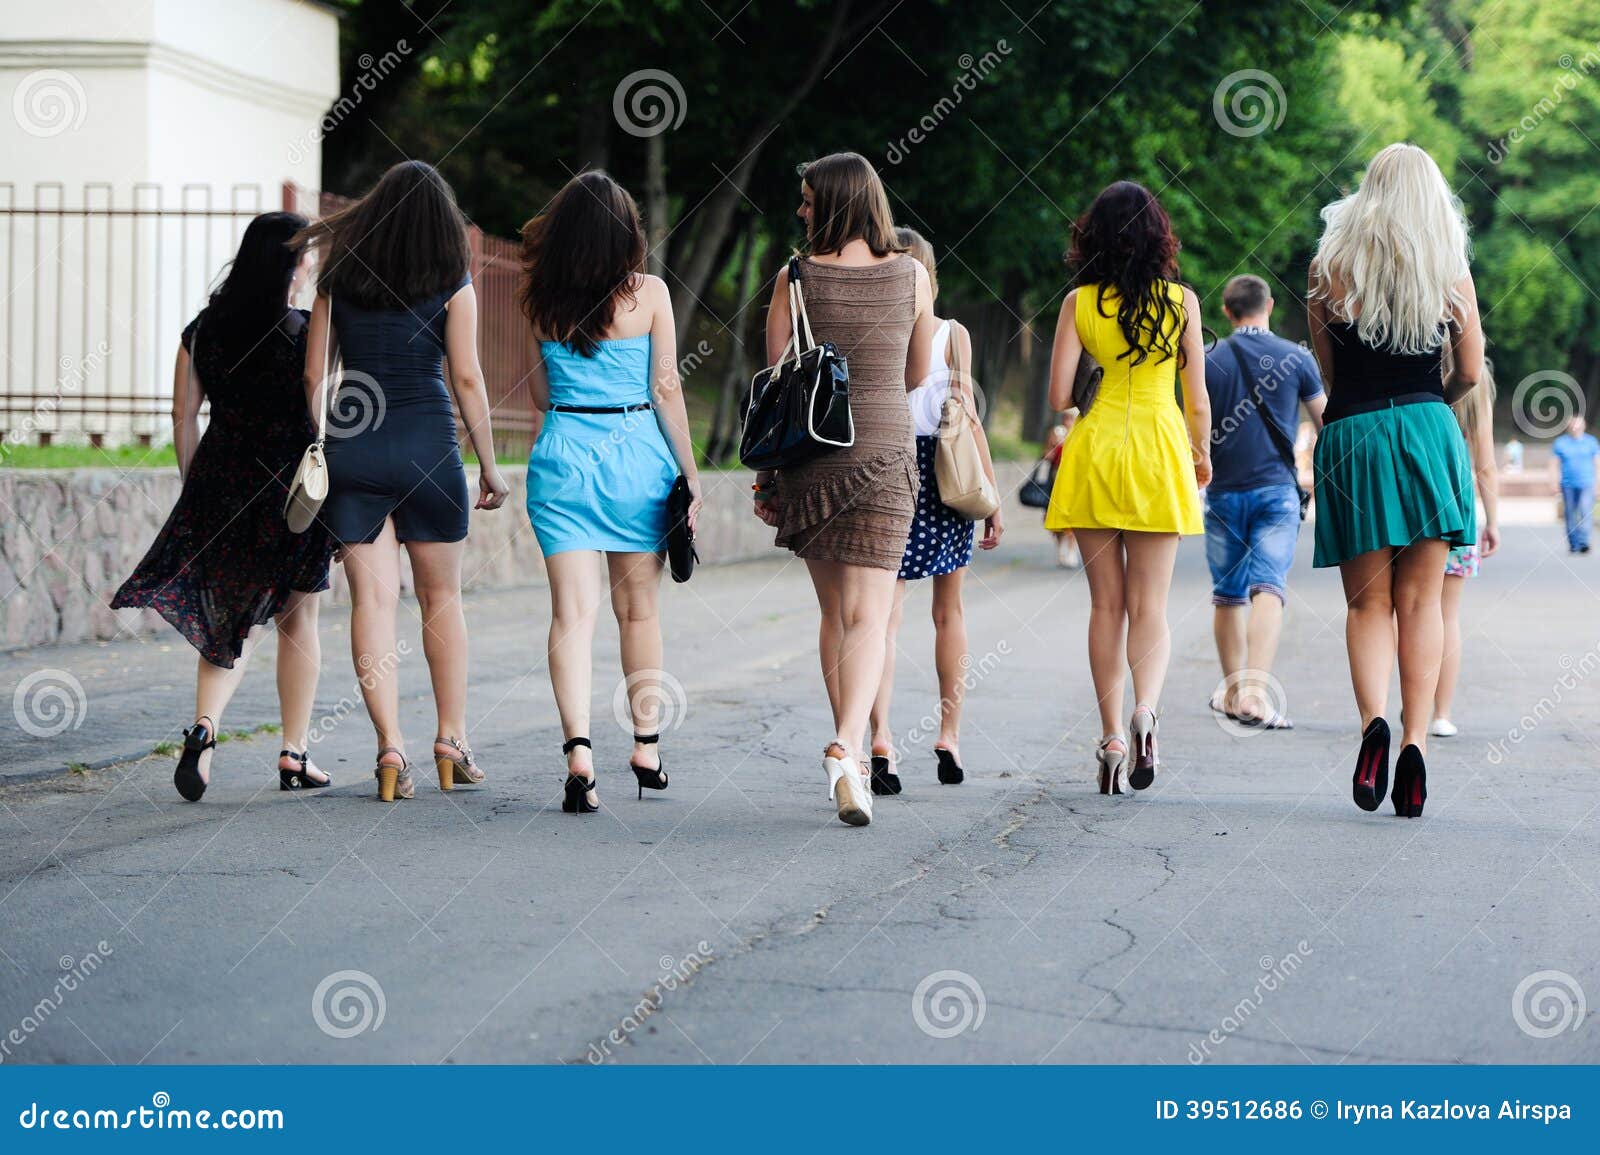 Девушки Идут По Улице Фото